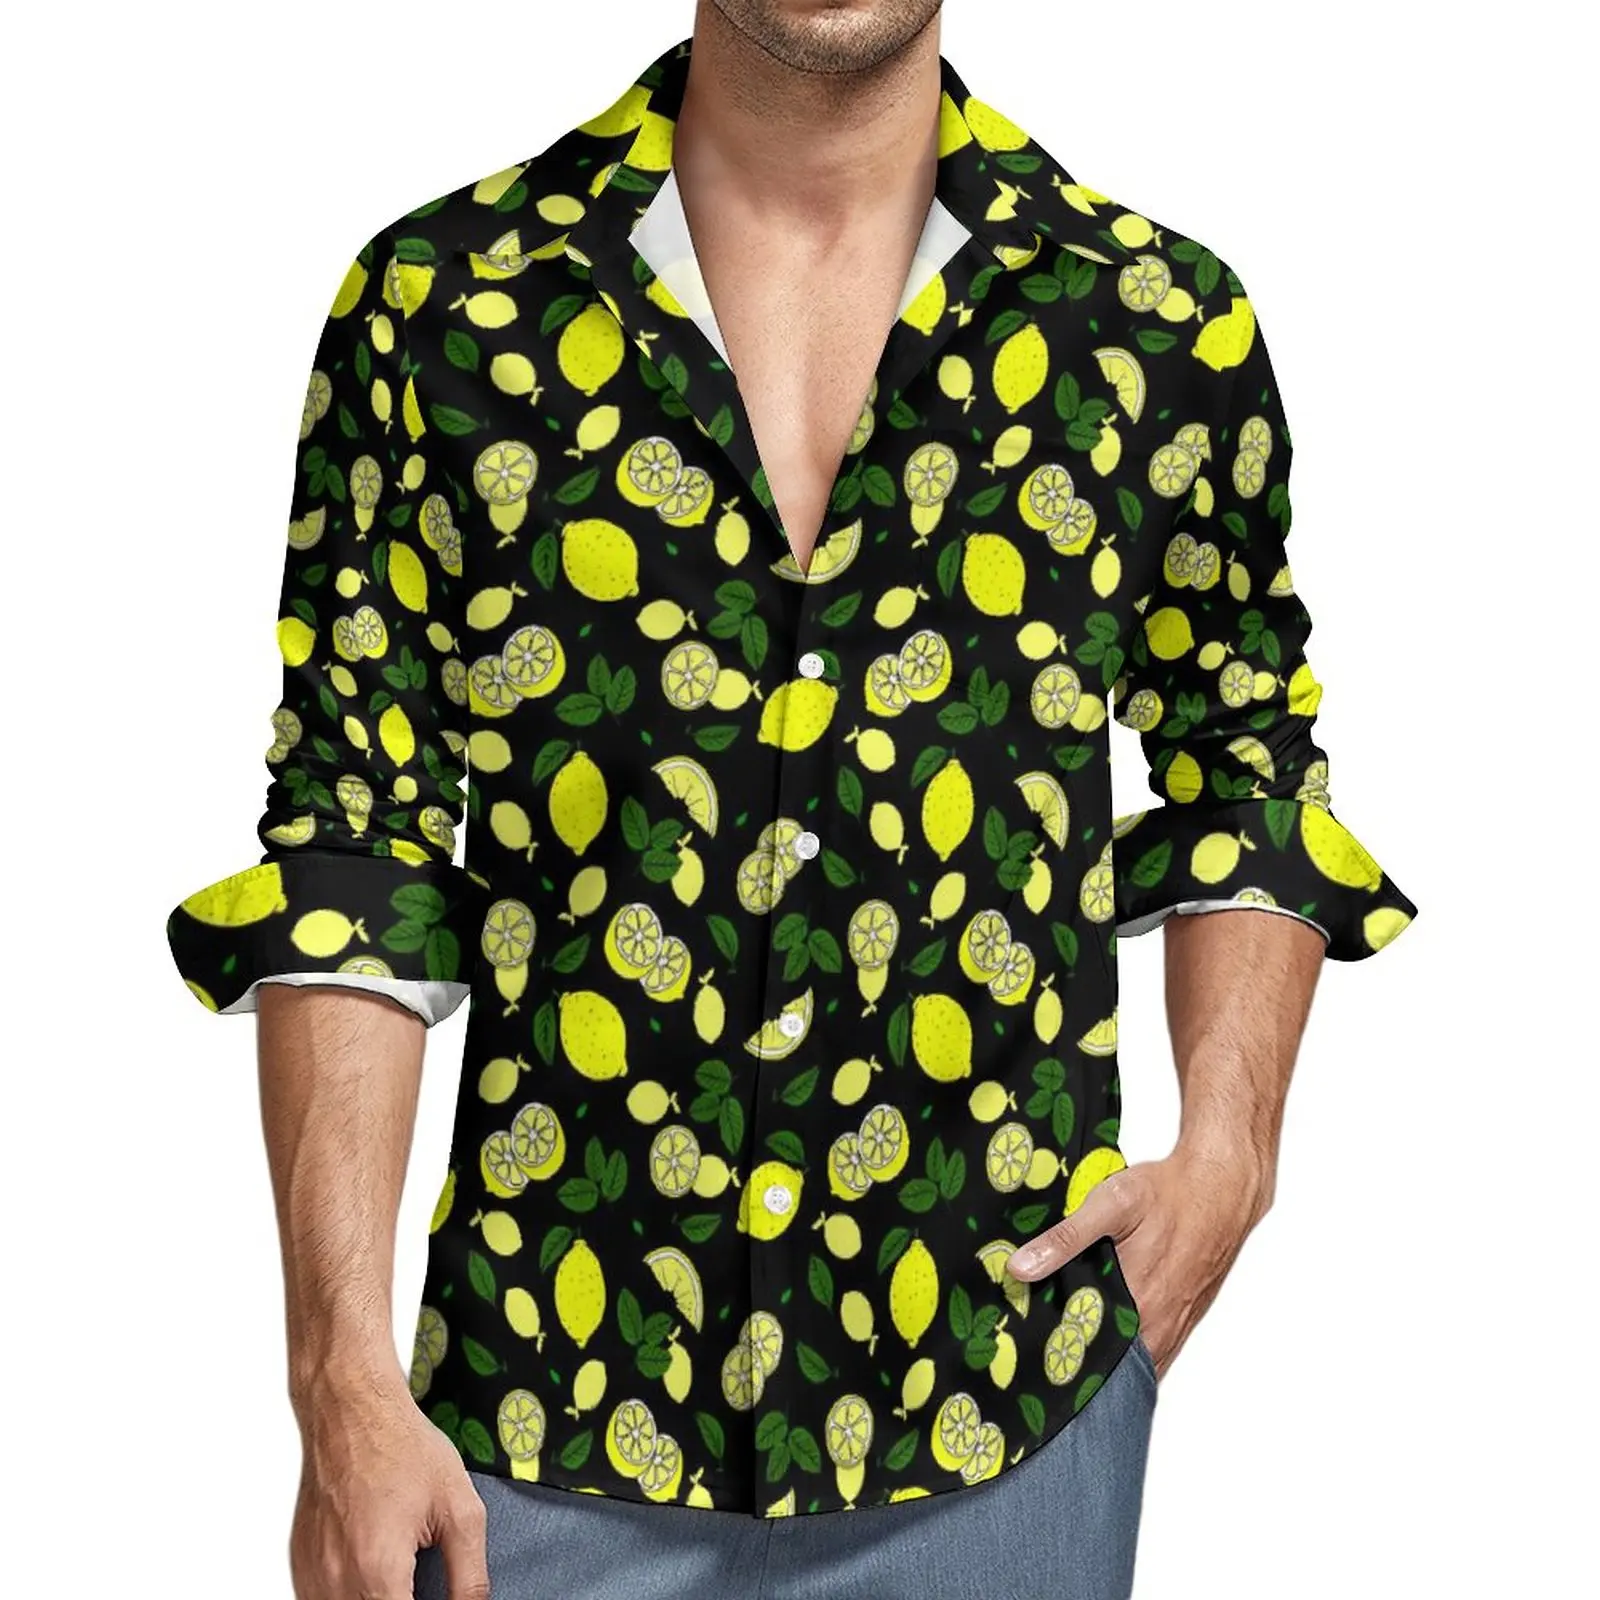 

Рубашка с лимонами, листьями, Осенние повседневные рубашки с принтом фруктов, мужские трендовые блузки с длинным рукавом, дизайн Y2K, женская одежда